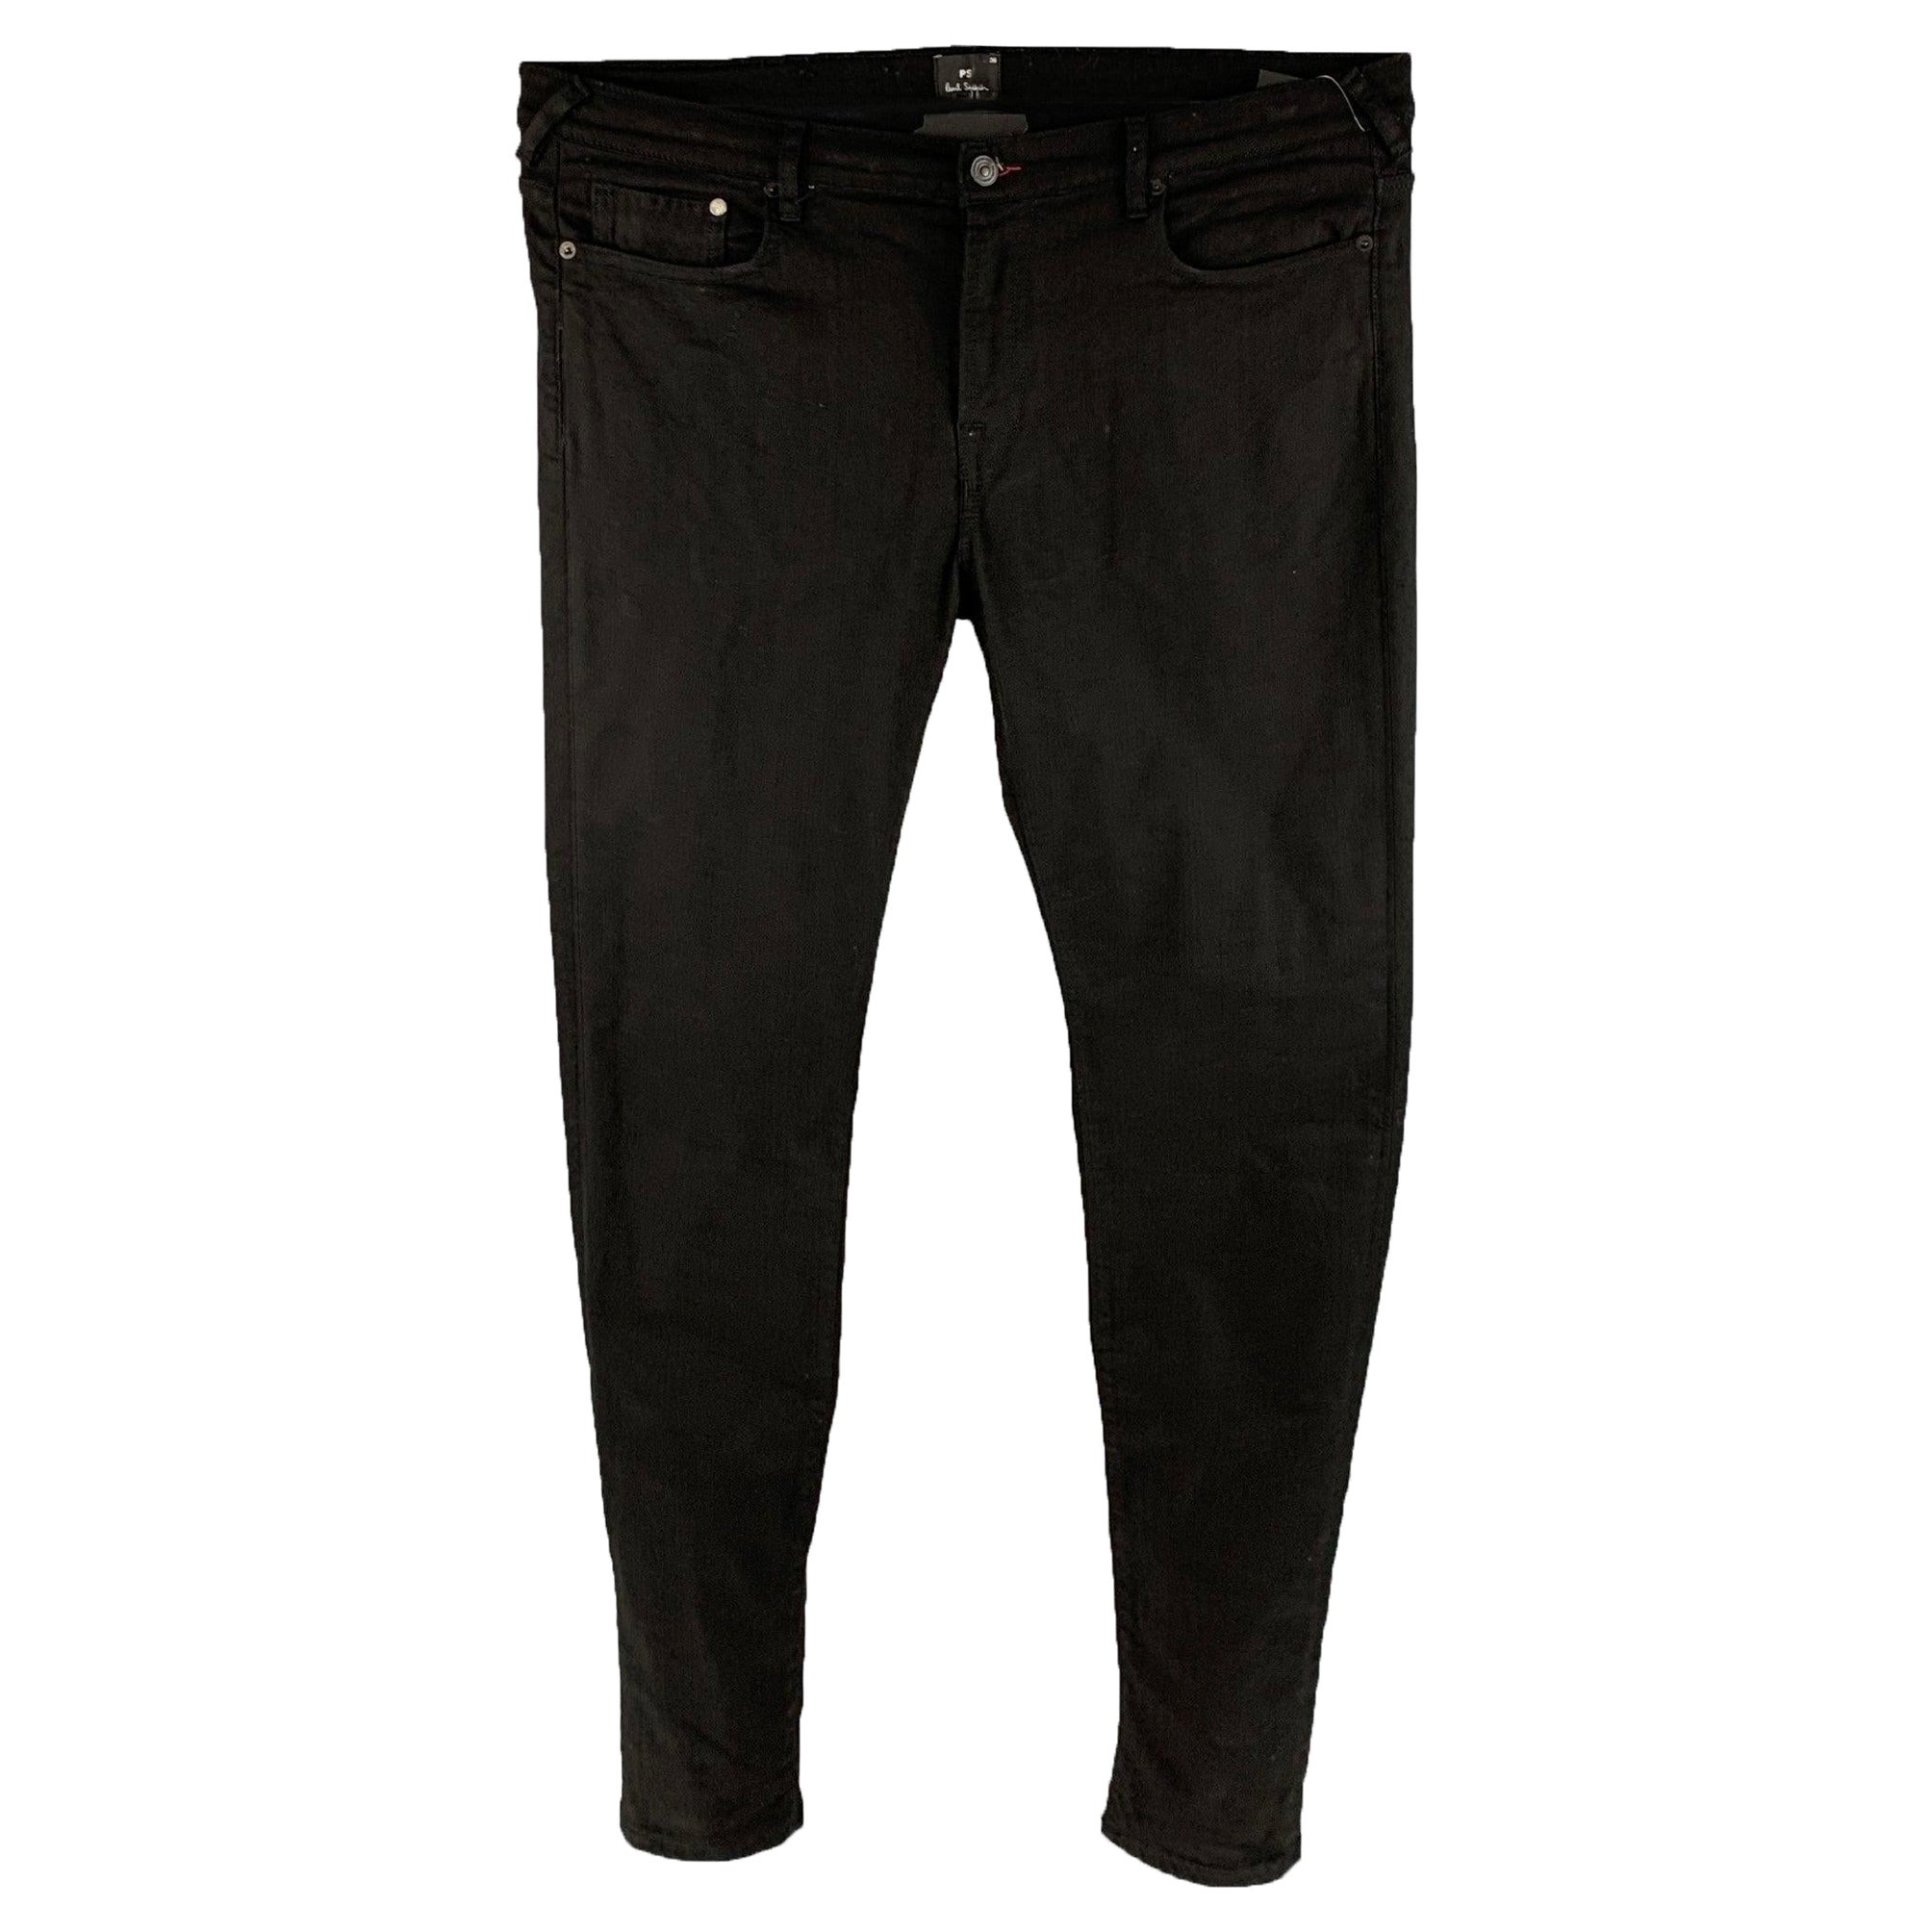 PAUL SMITH Size 36 Black Cotton Blend Jeans For Sale